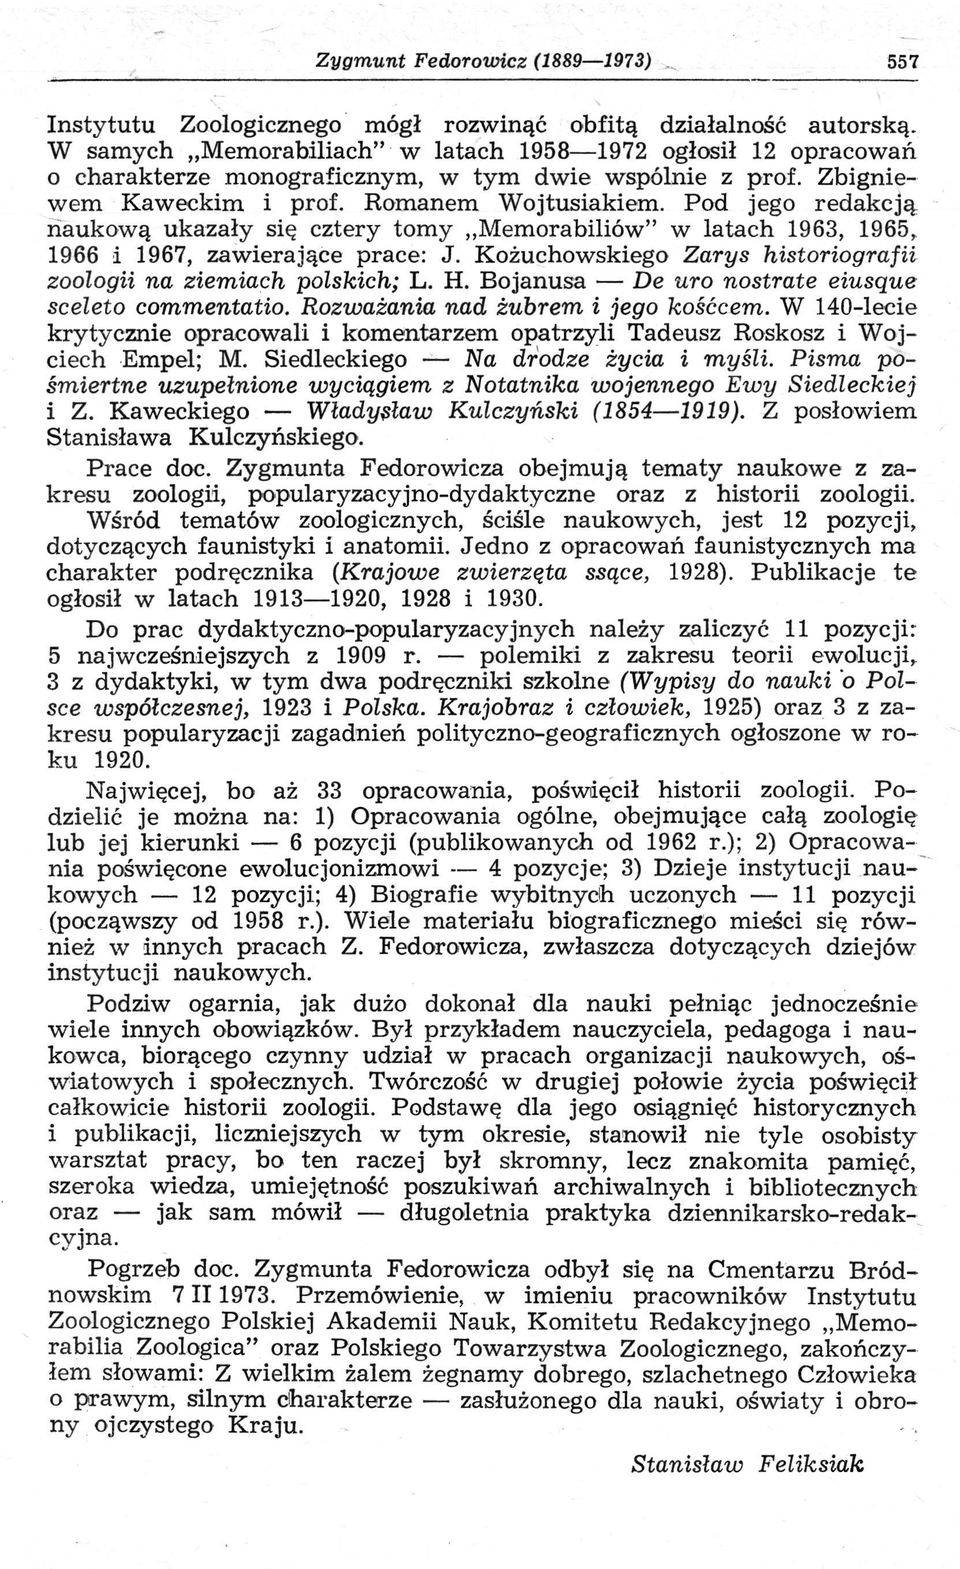 Pod jego redakcją naukową ukazały się cztery tomy Memorabiliów" w latach 1963, 1965, 1966 i 1967, zawierające prace: J. Kożuchowskiego Zarys historiografii zoologii na ziemiach polskich; L. H.